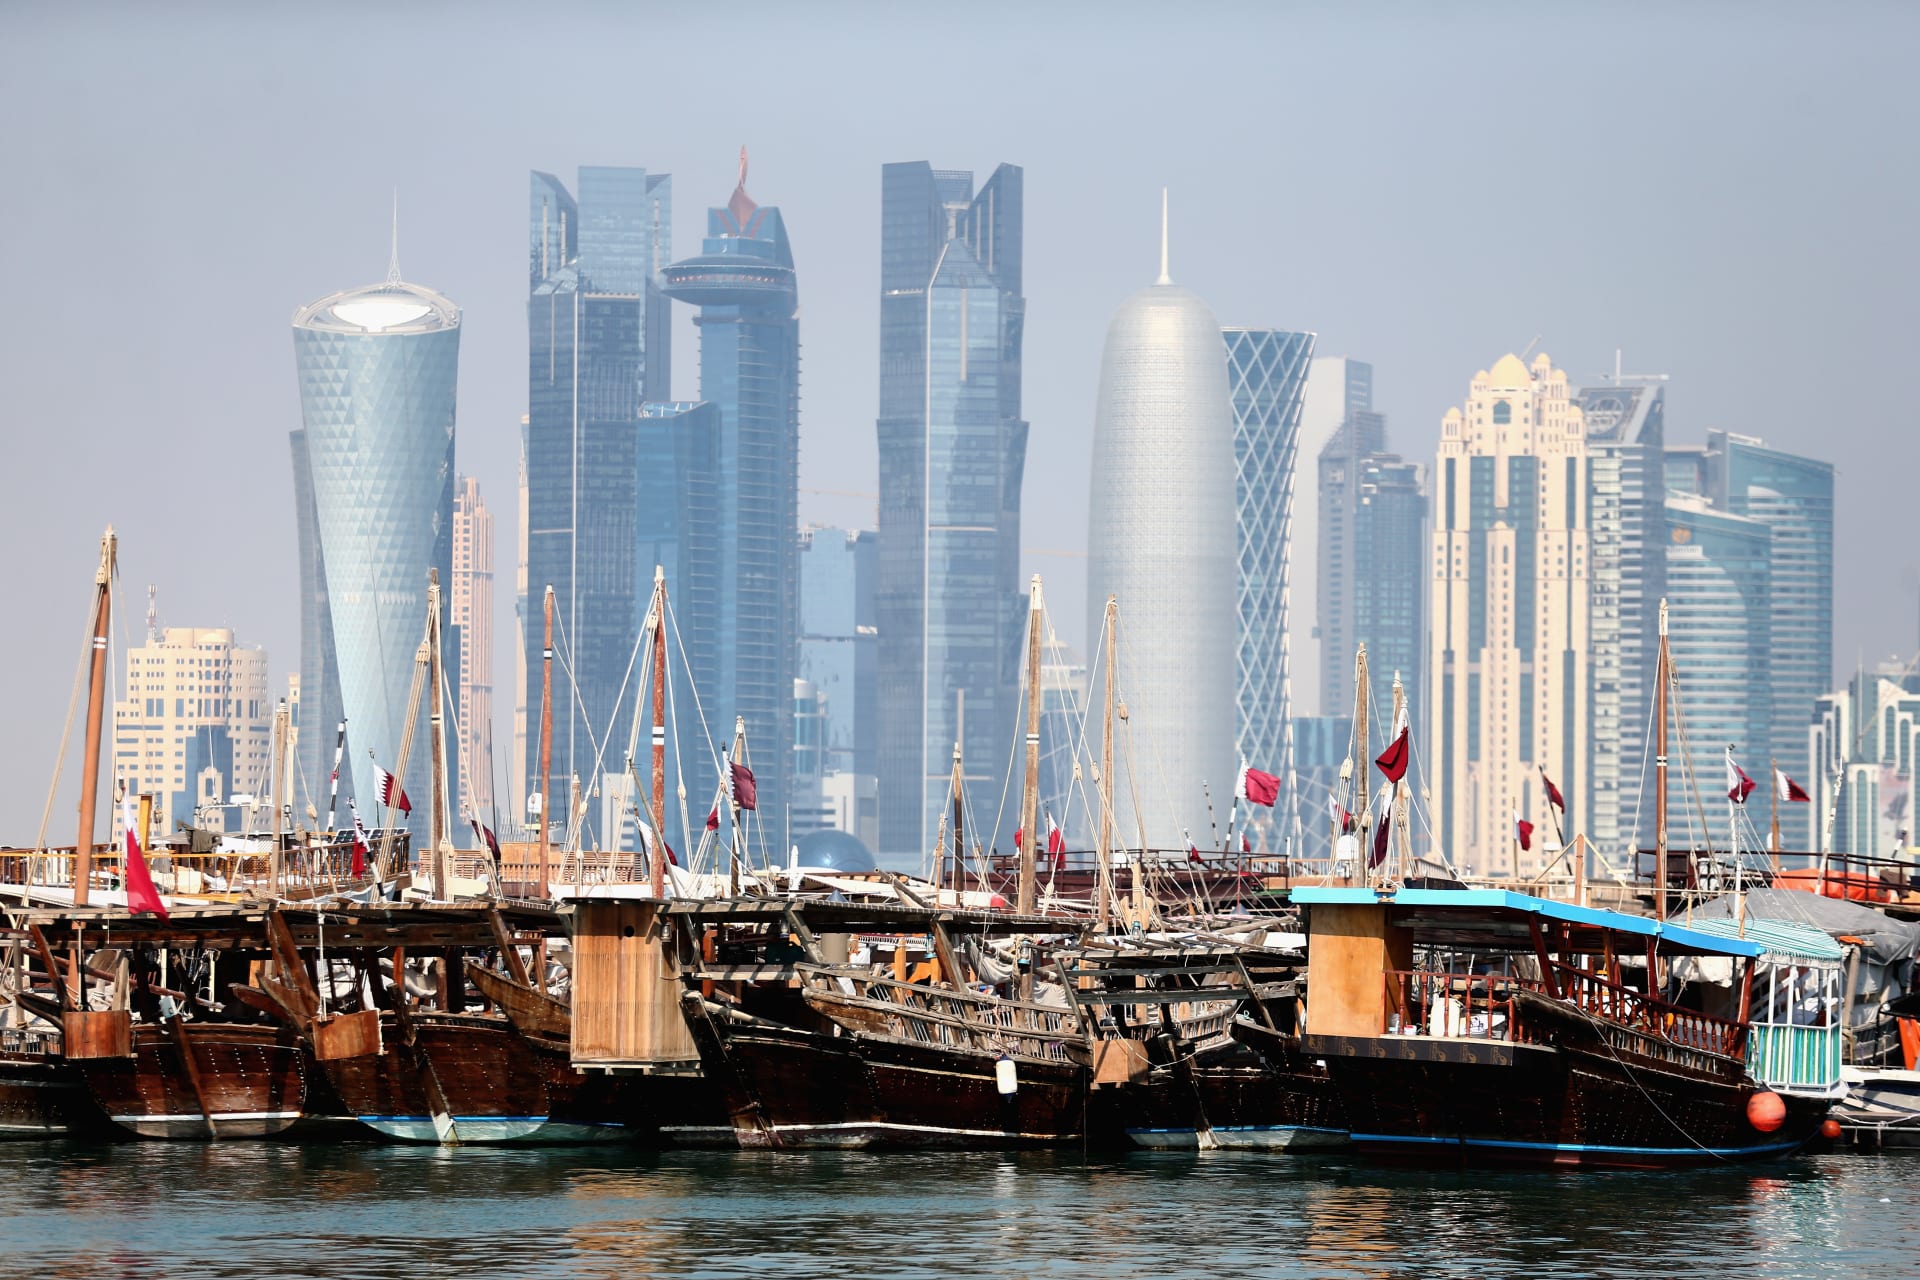 باحث أمريكي: الأزمة مع قطر أكبر من قرصنة روسية والمشكلة بتعريف الإرهاب